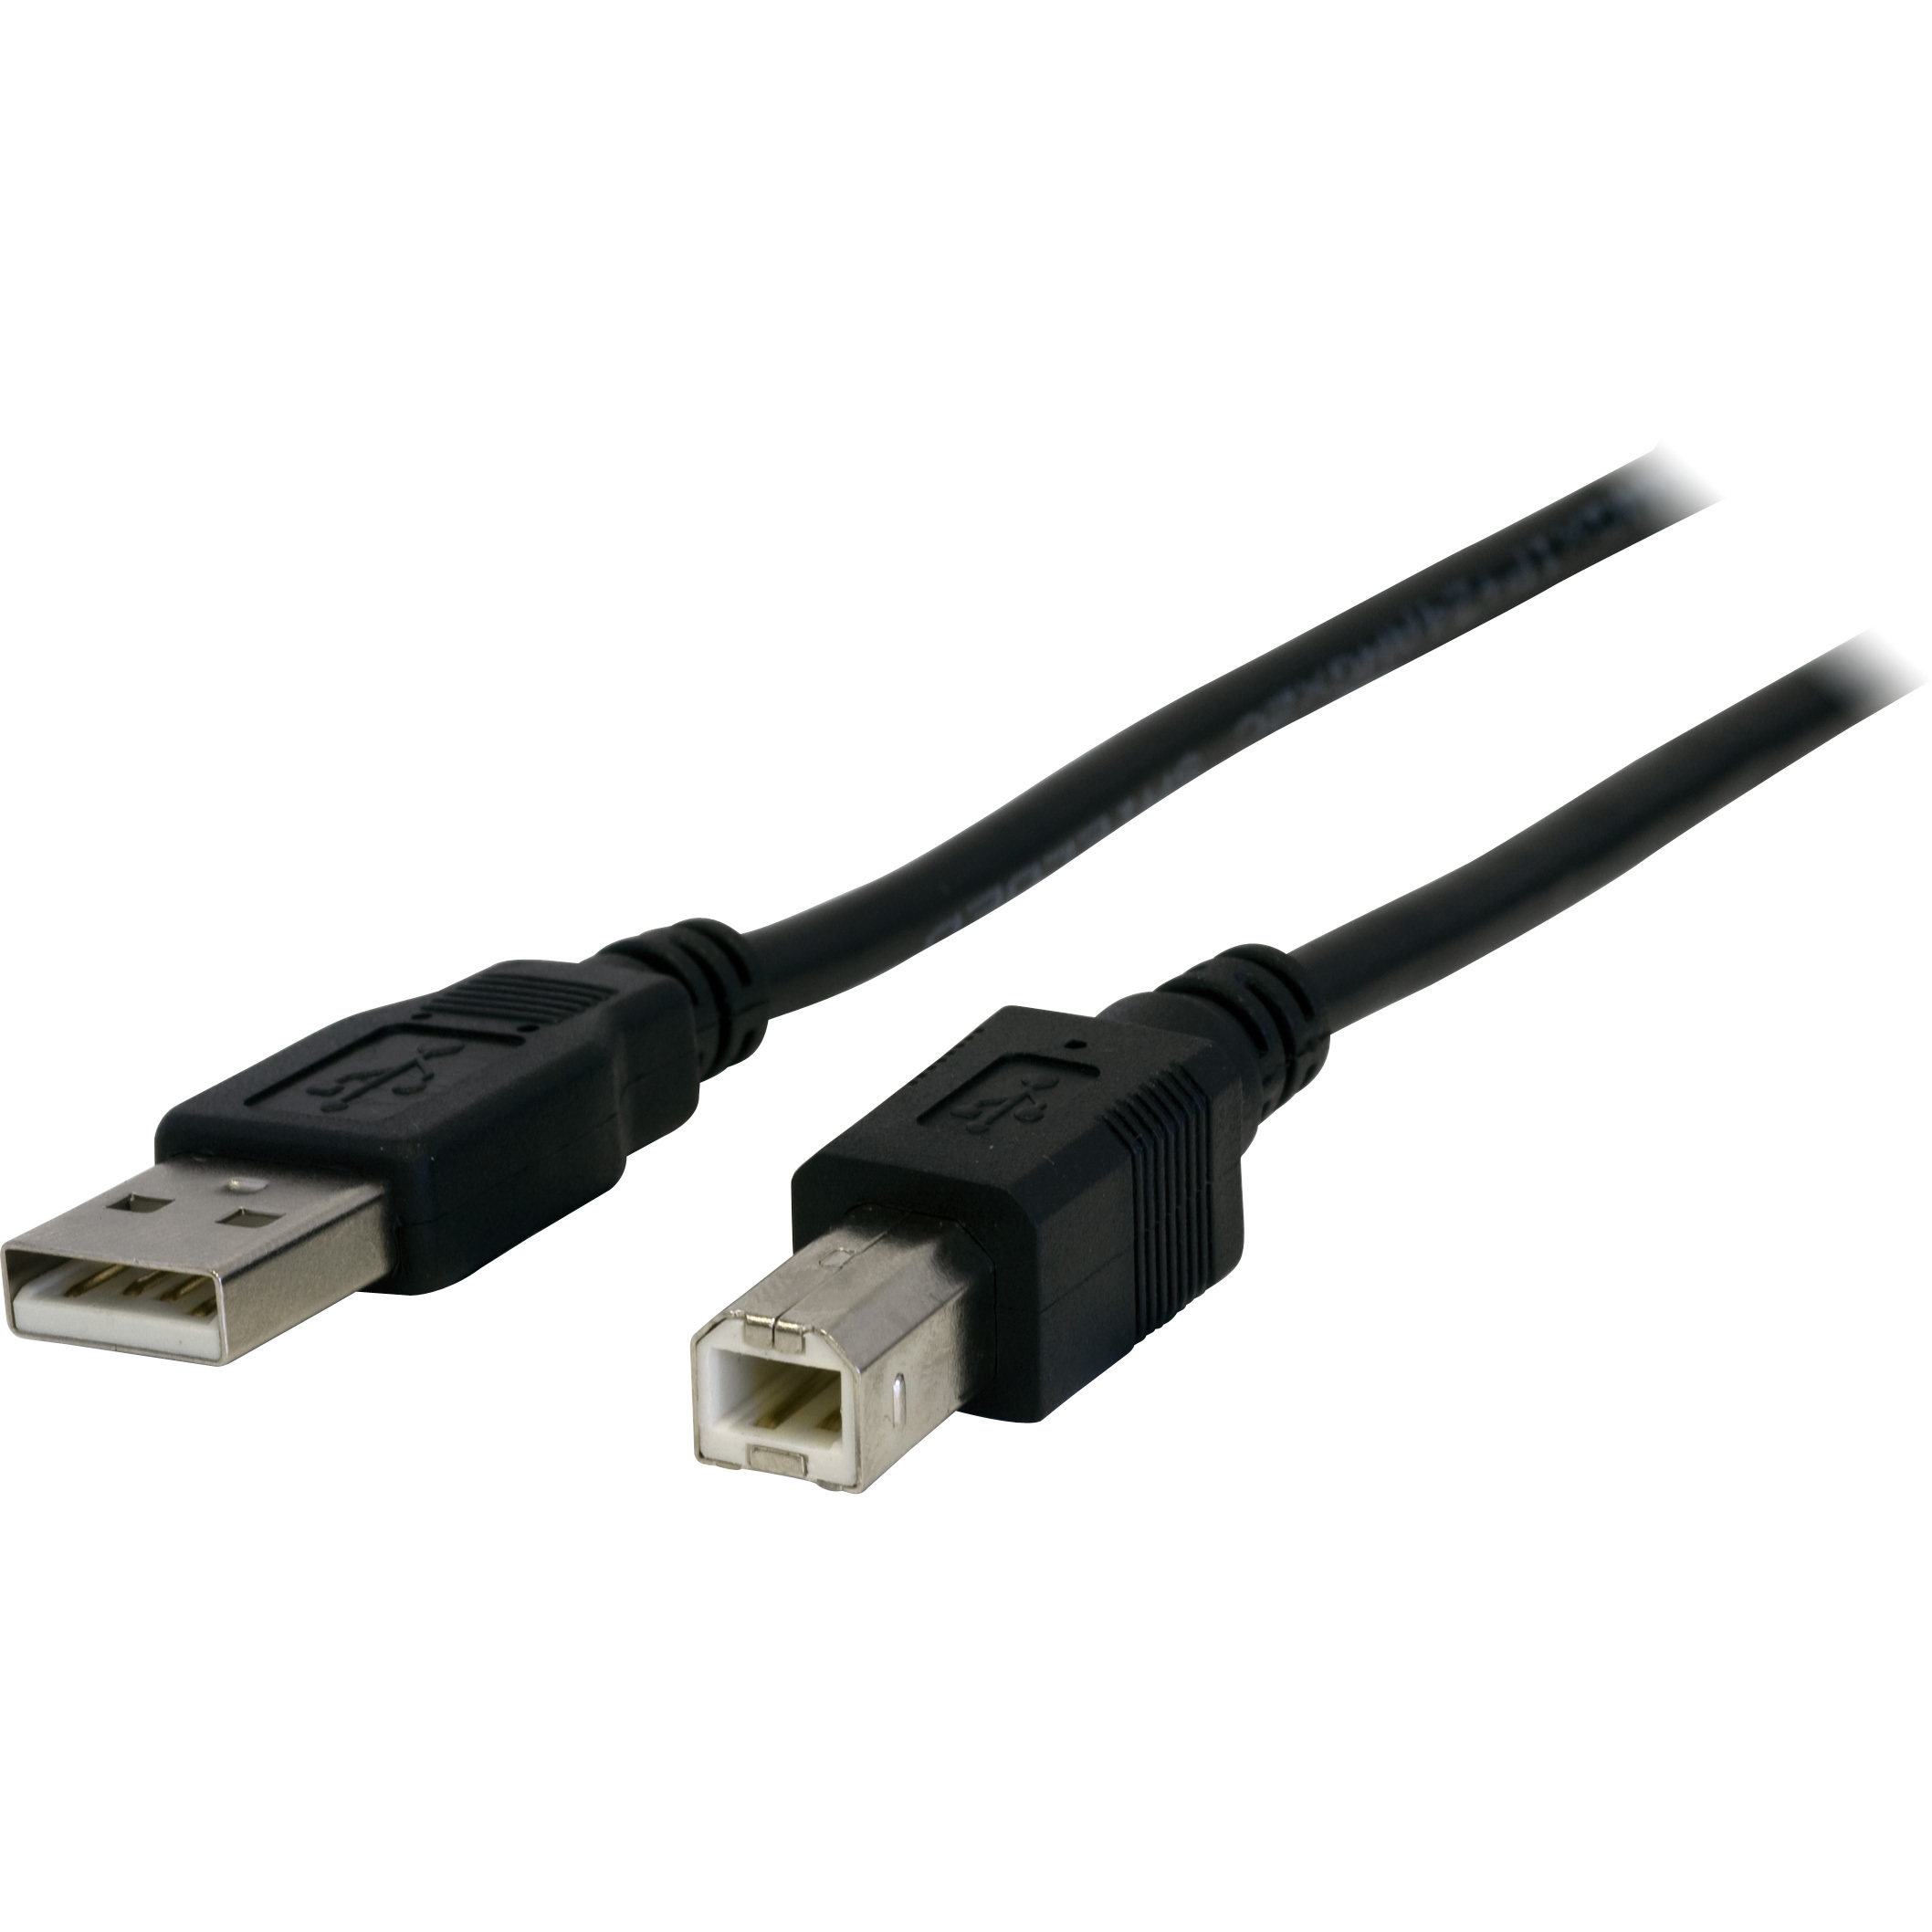 LC7203 – 5METRES – USB-A PLUG TO USB-B PLUG